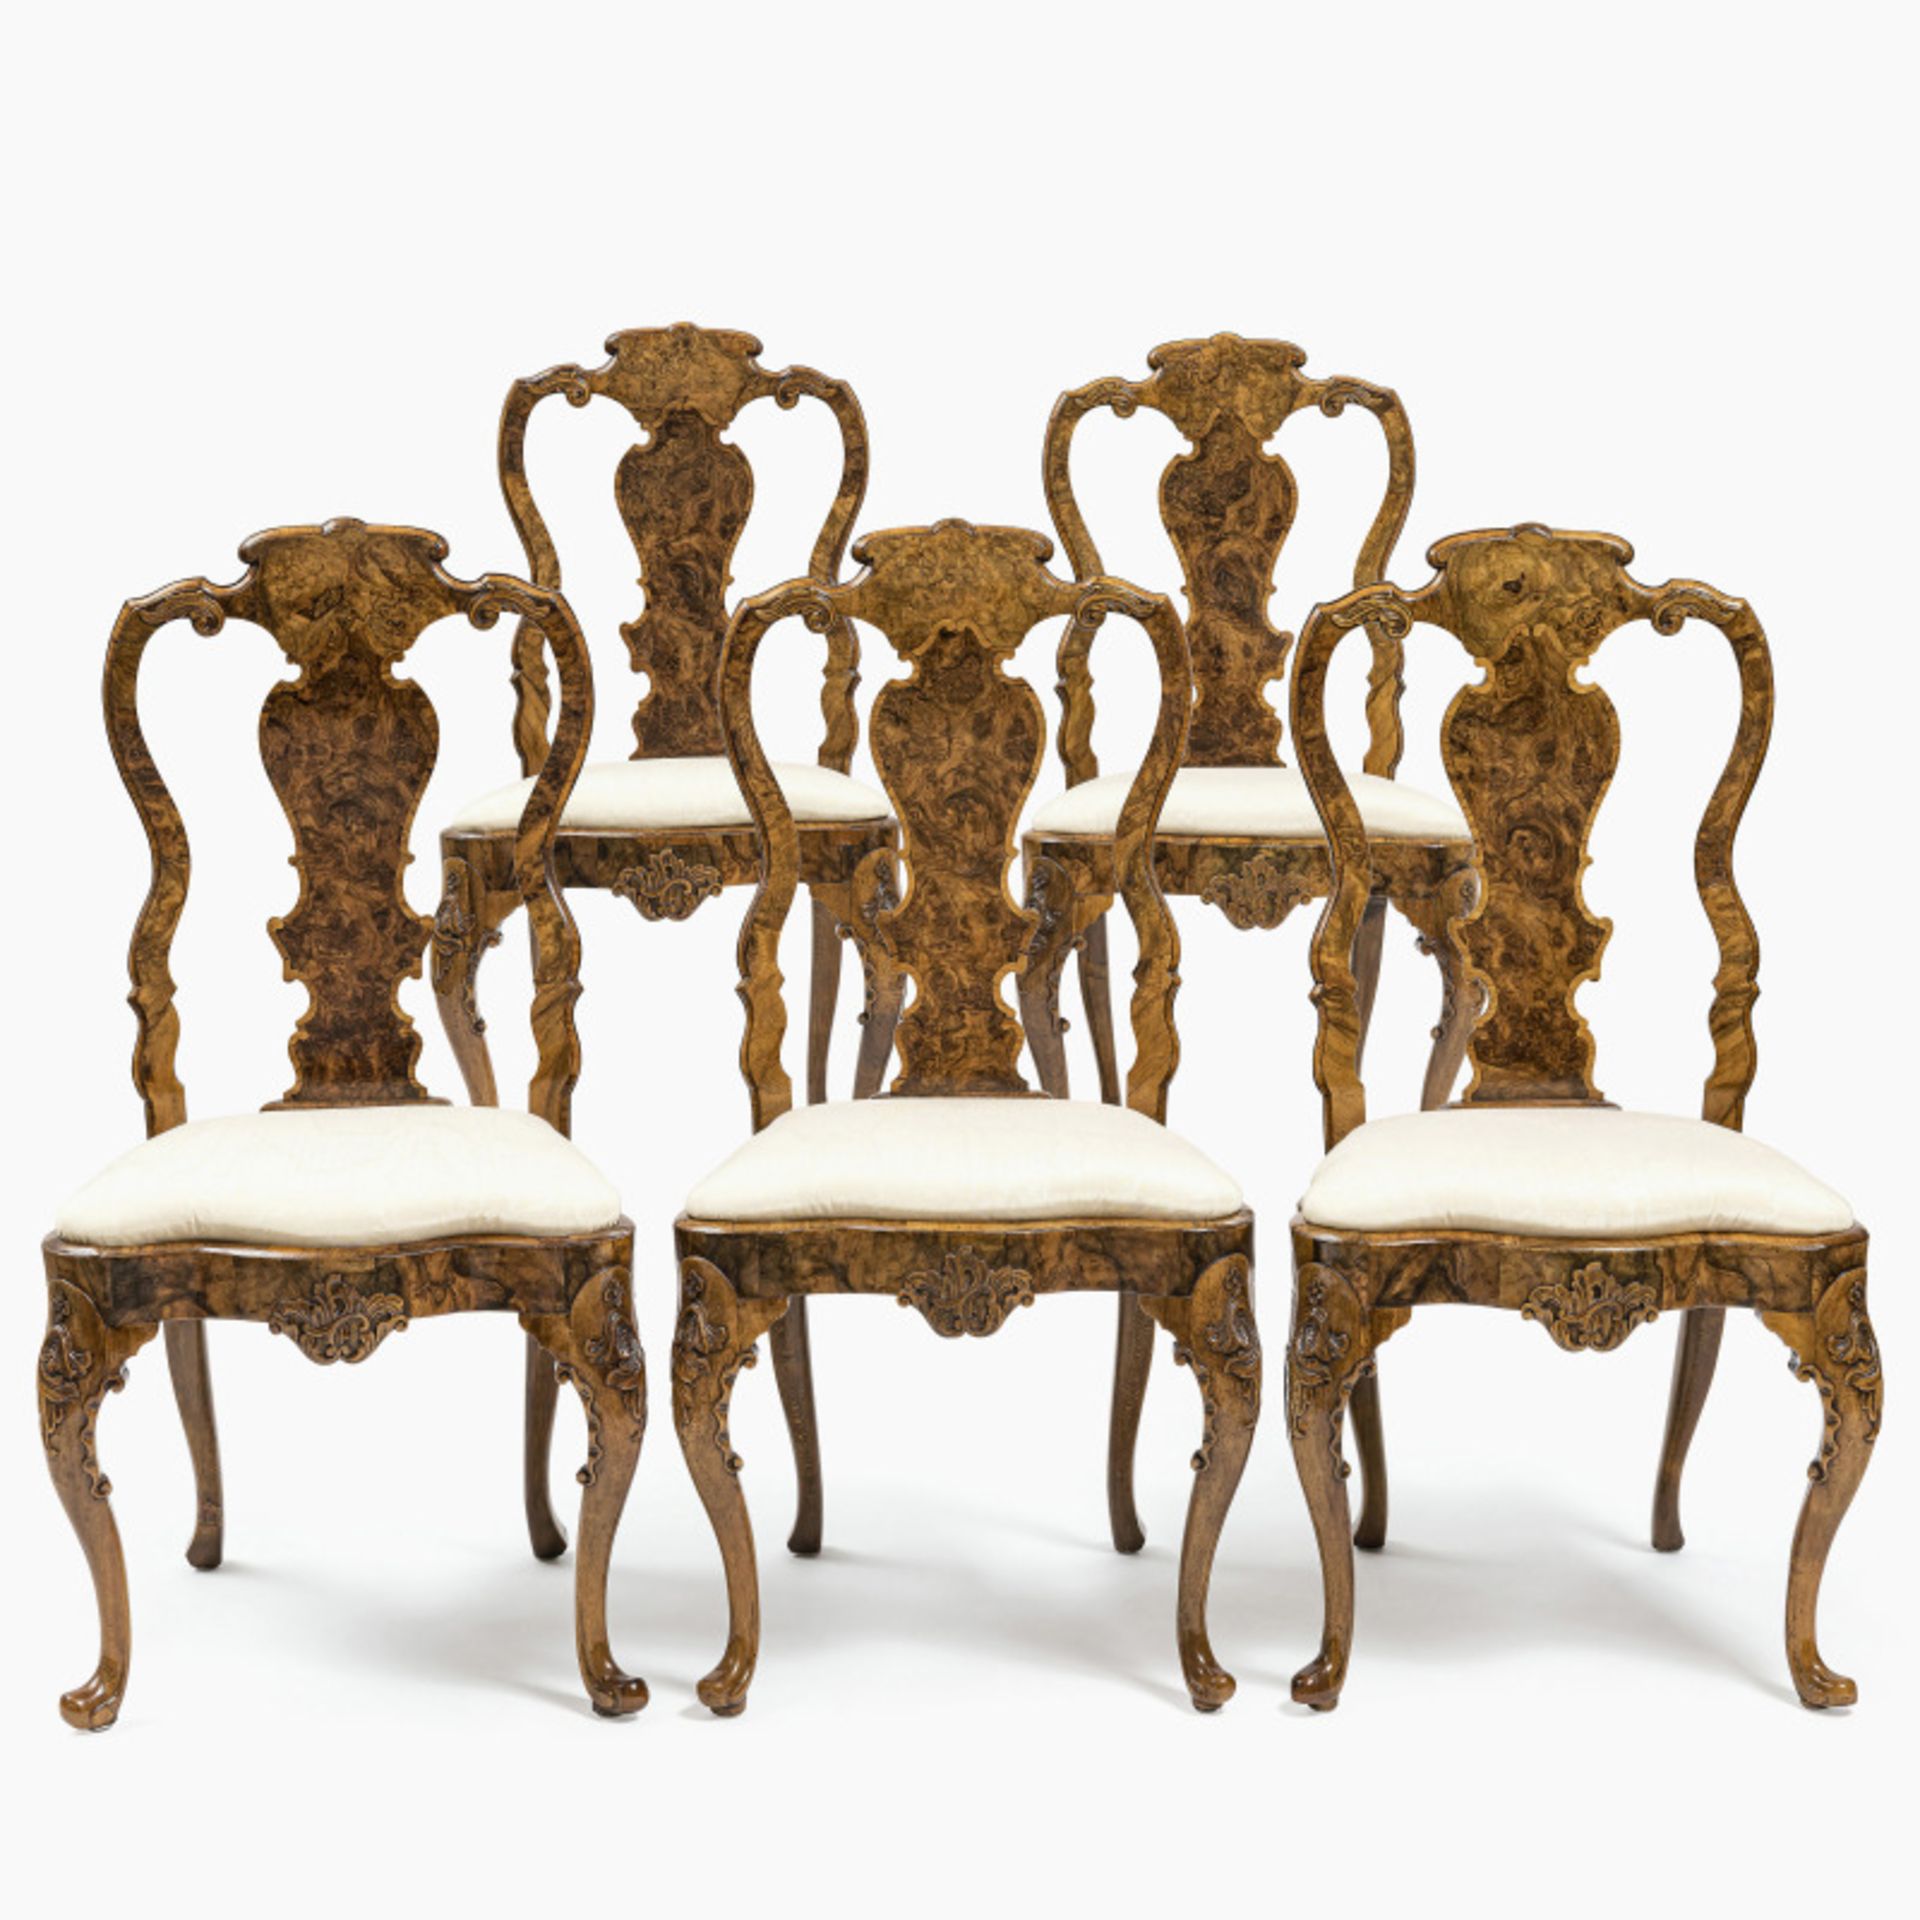 A set of five chairs - Abraham Roentgen manufactory (1711 Mülheim am Rhein - 1793 Herrnhut), Neuwied